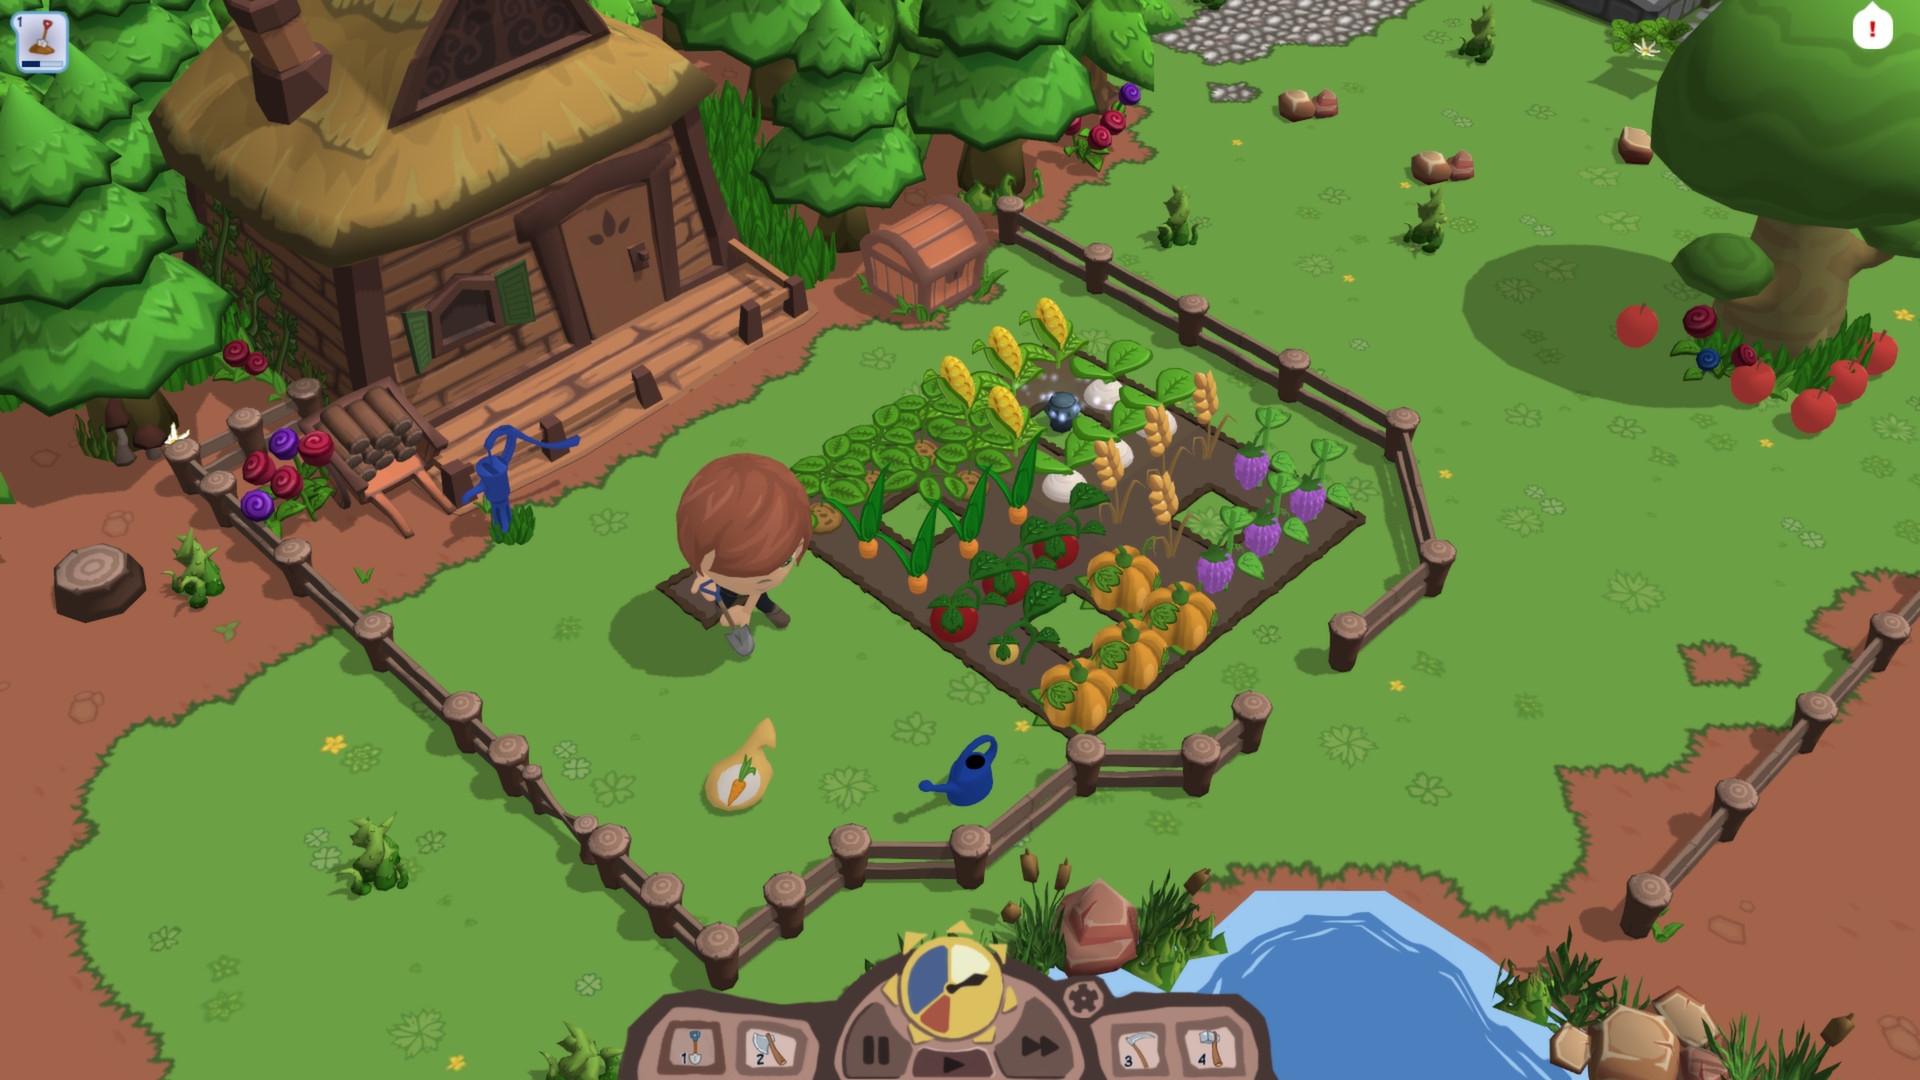 Смотреть скриншот из игры Farm For Your Life под номером 6. Скриншот из игр...